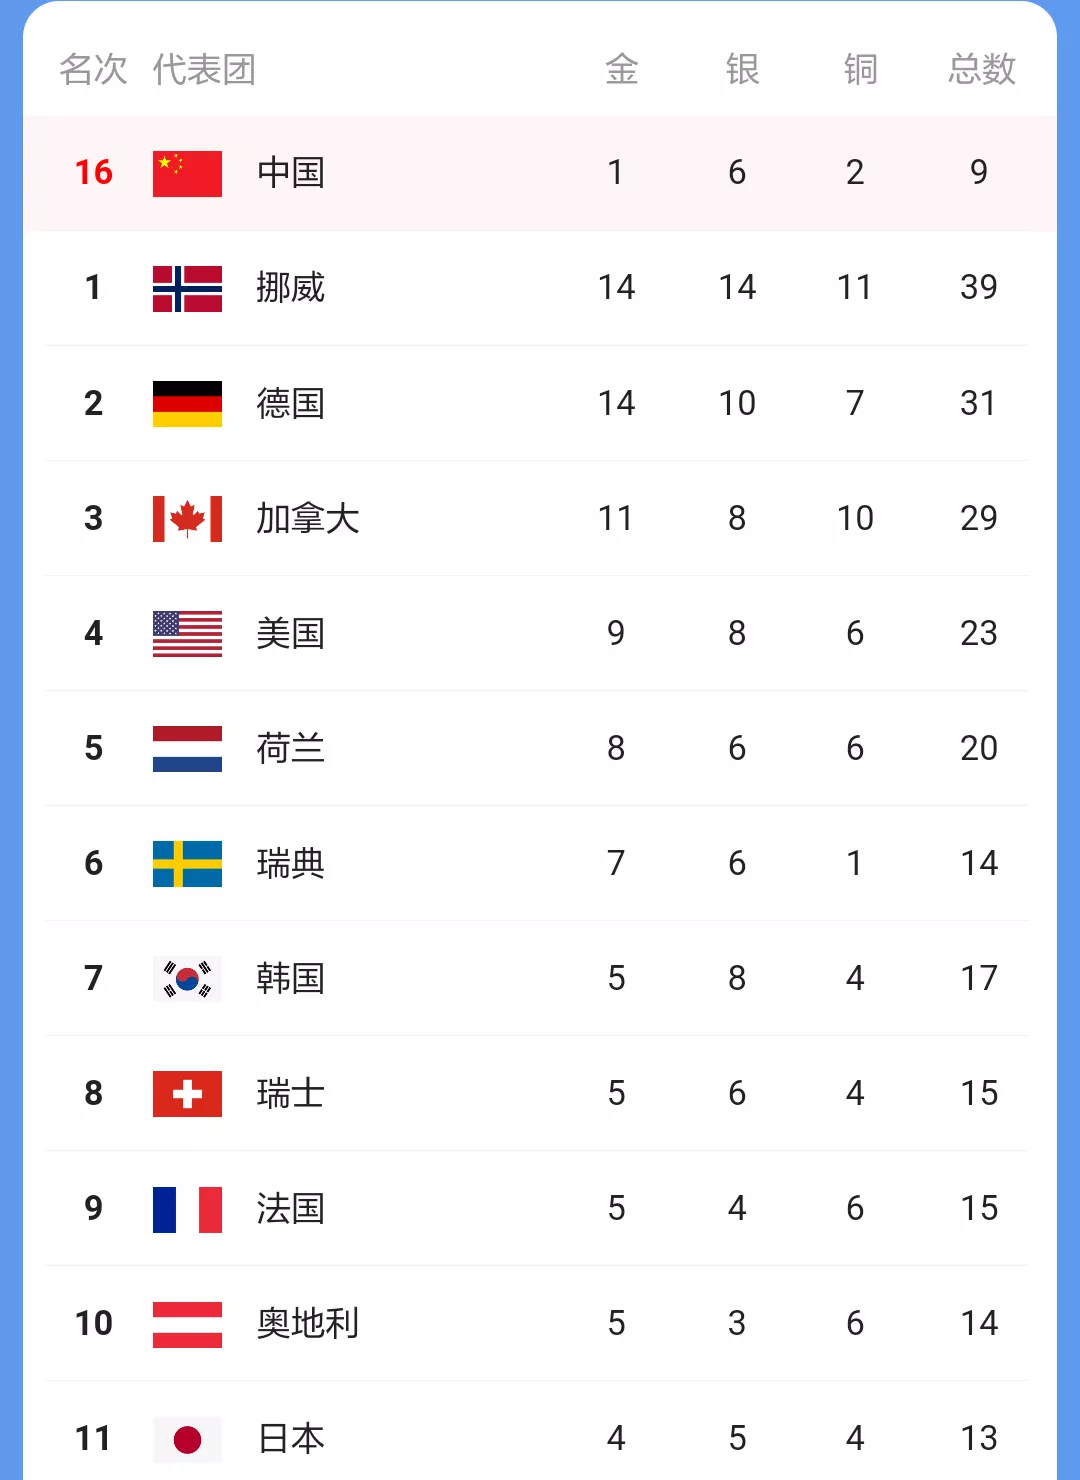 22年北京冬奥会赛程还有4天就要画上句号了 在金牌和奖牌榜上 北欧强国挪威大部分时间都处于榜首 继昨天拿到3金2银 天天看点